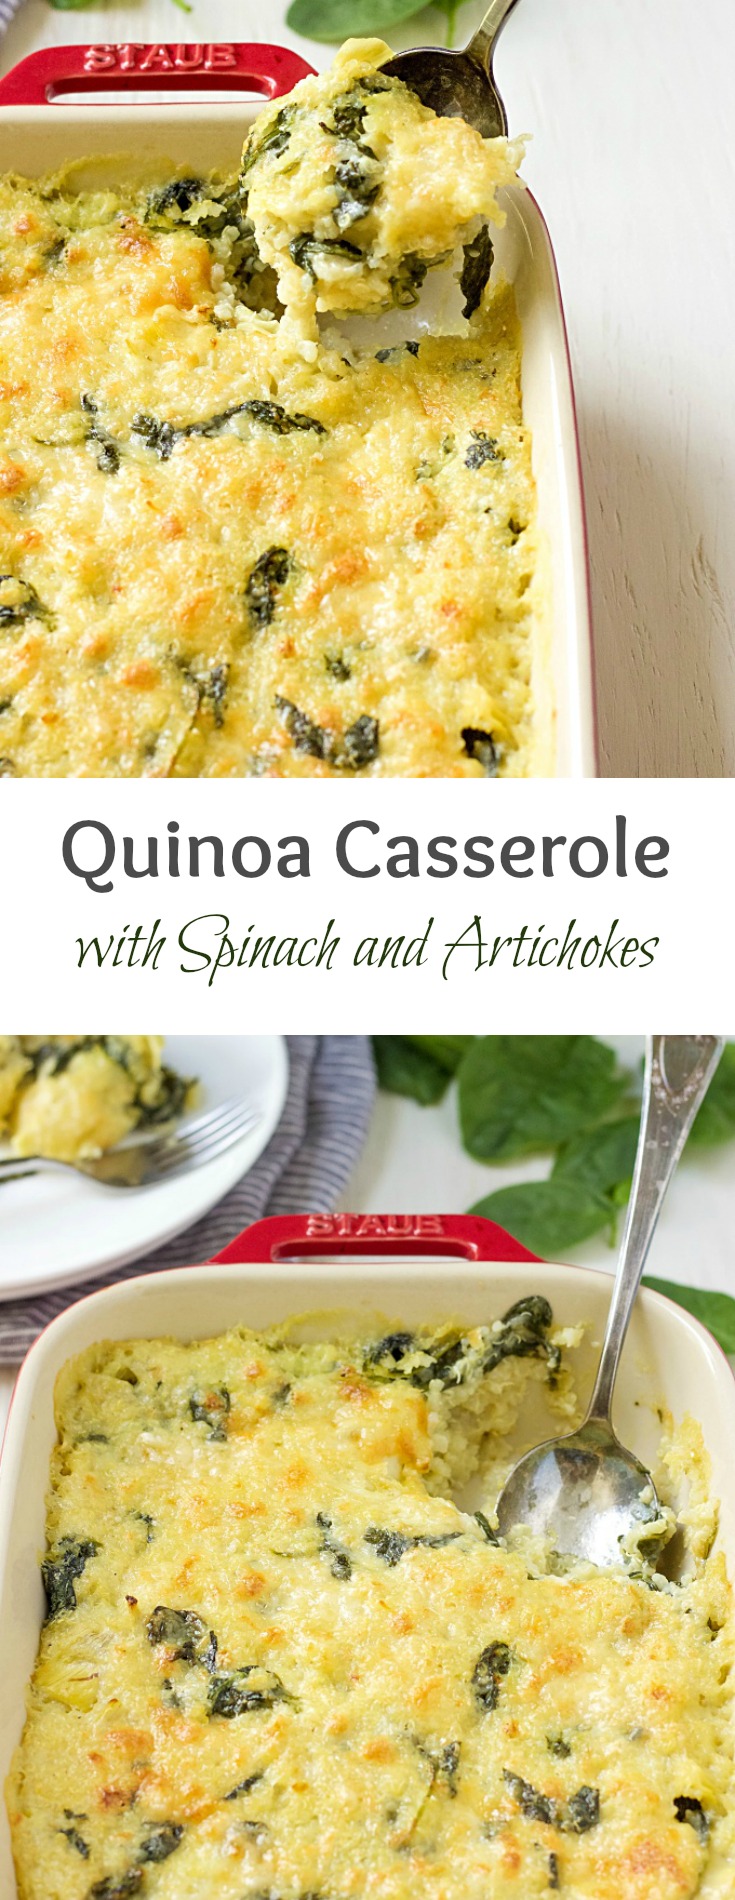 Healthy Quinoa Casserole with spinach and artichokes